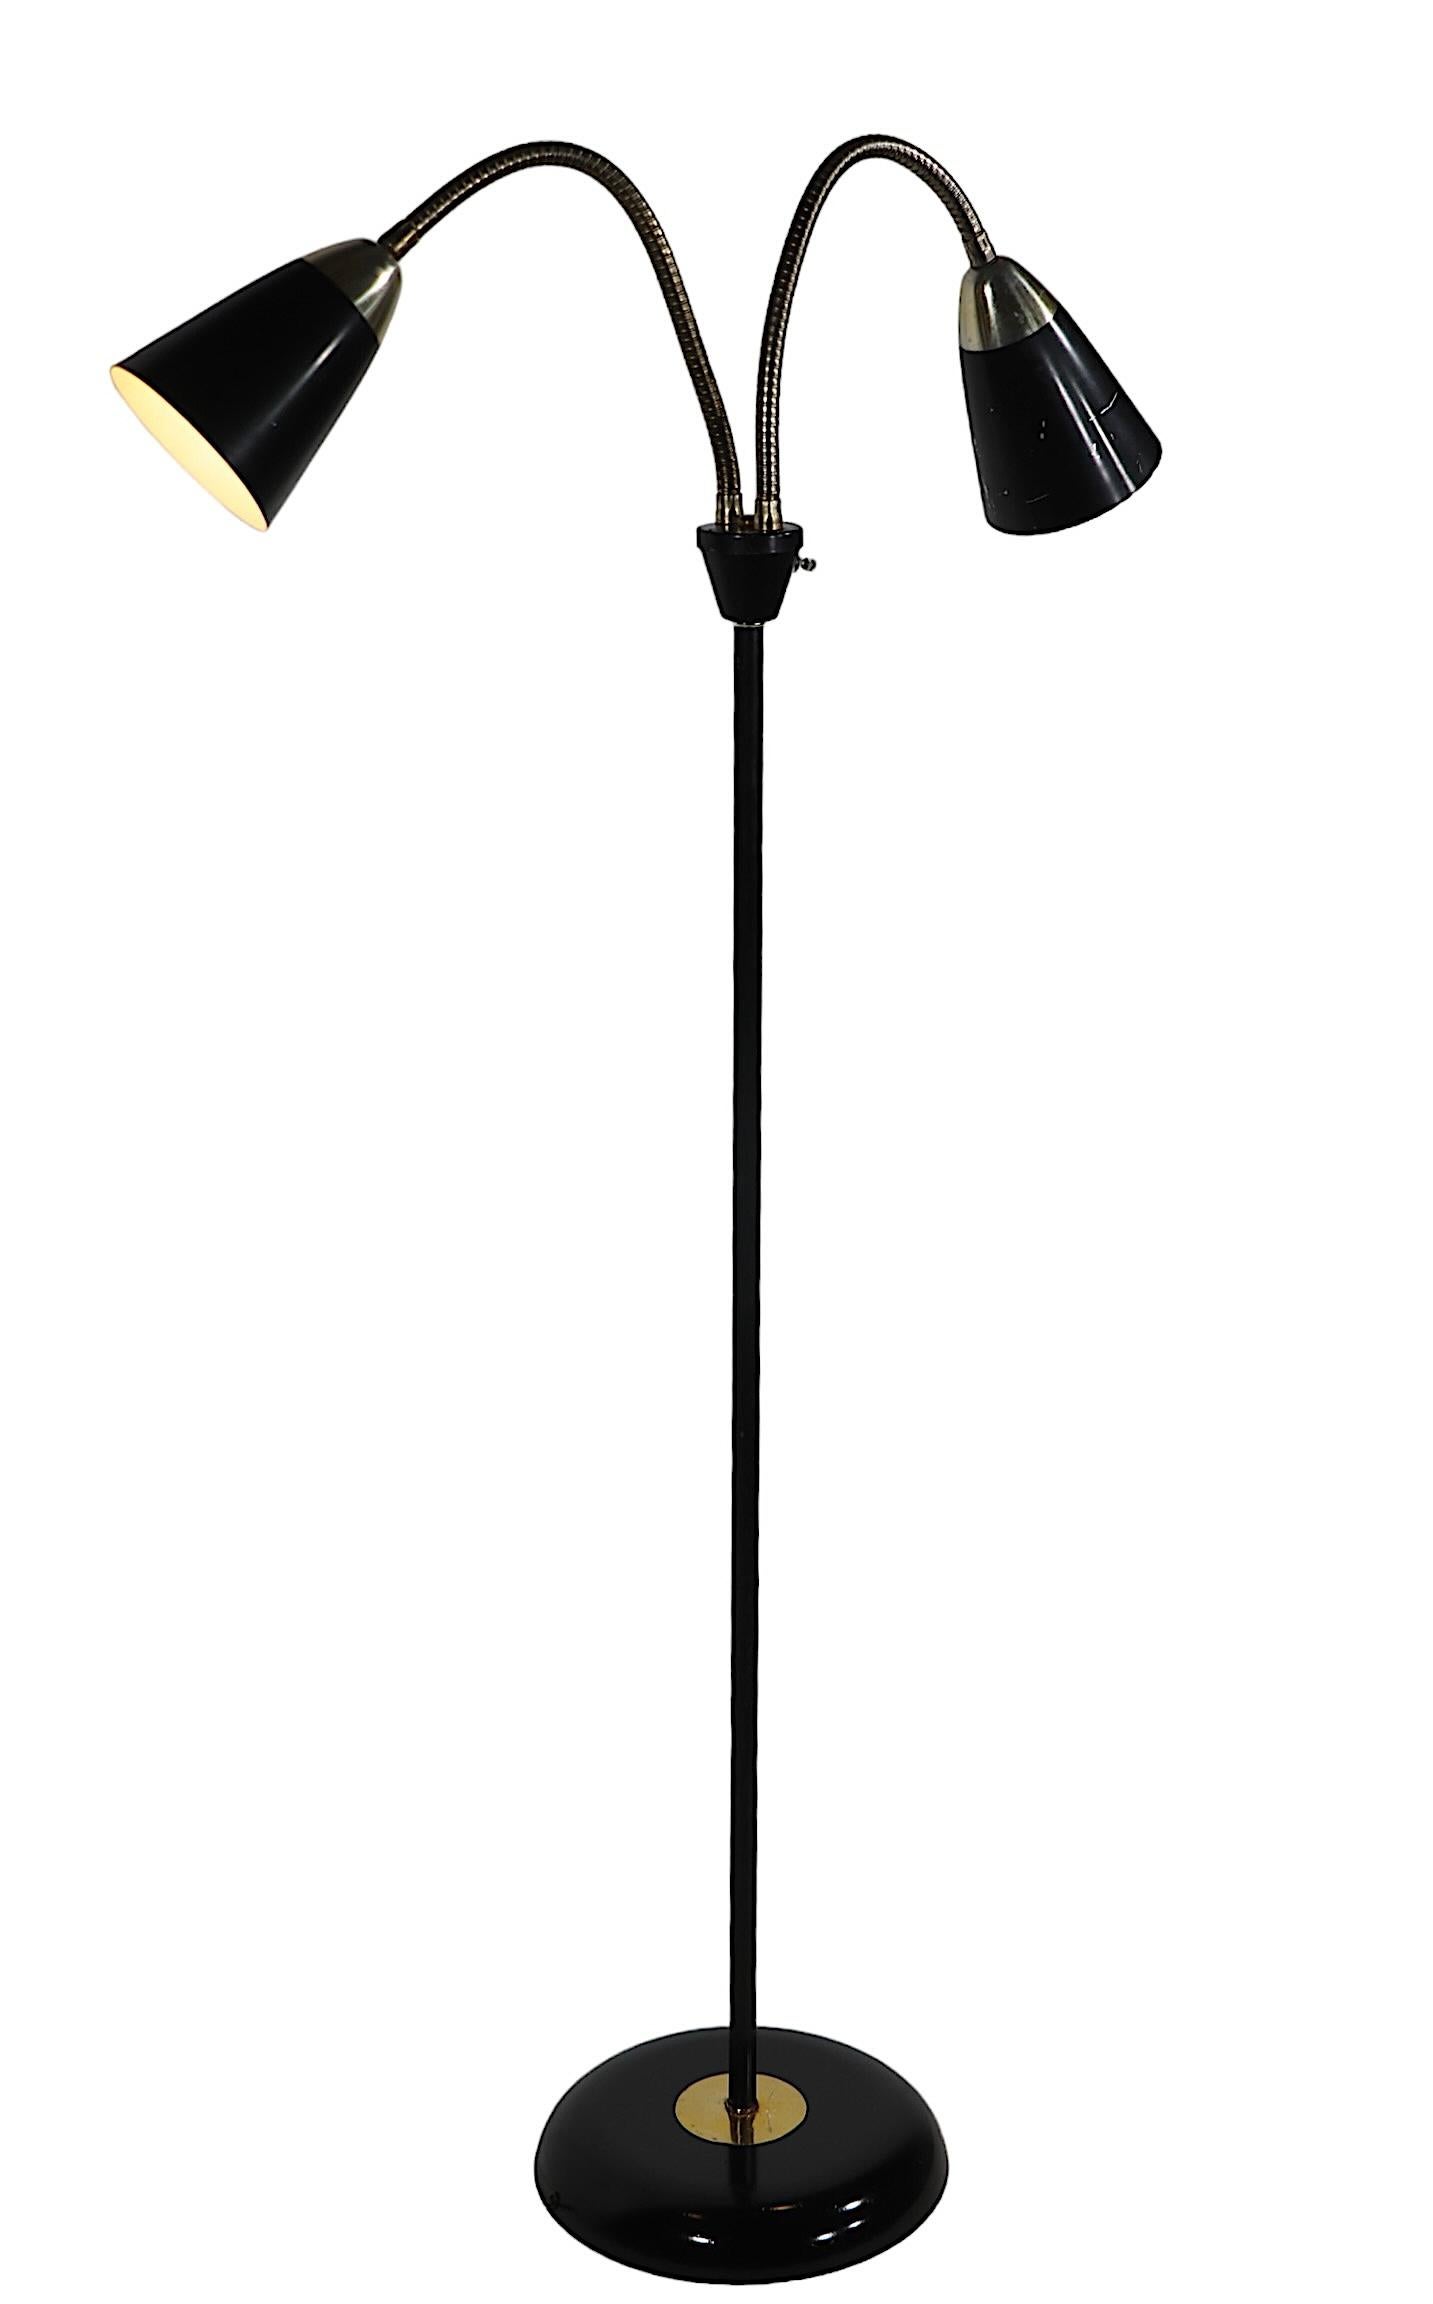 Iconique lampadaire à col de cygne à deux lumières du milieu du siècle dernier, avec des bras flexibles et des abat-jours coniques, sur une base ronde. Conçu par Gerald Thurston, pour Lightolier, vers les années 1950.  Souvent imitée, jamais